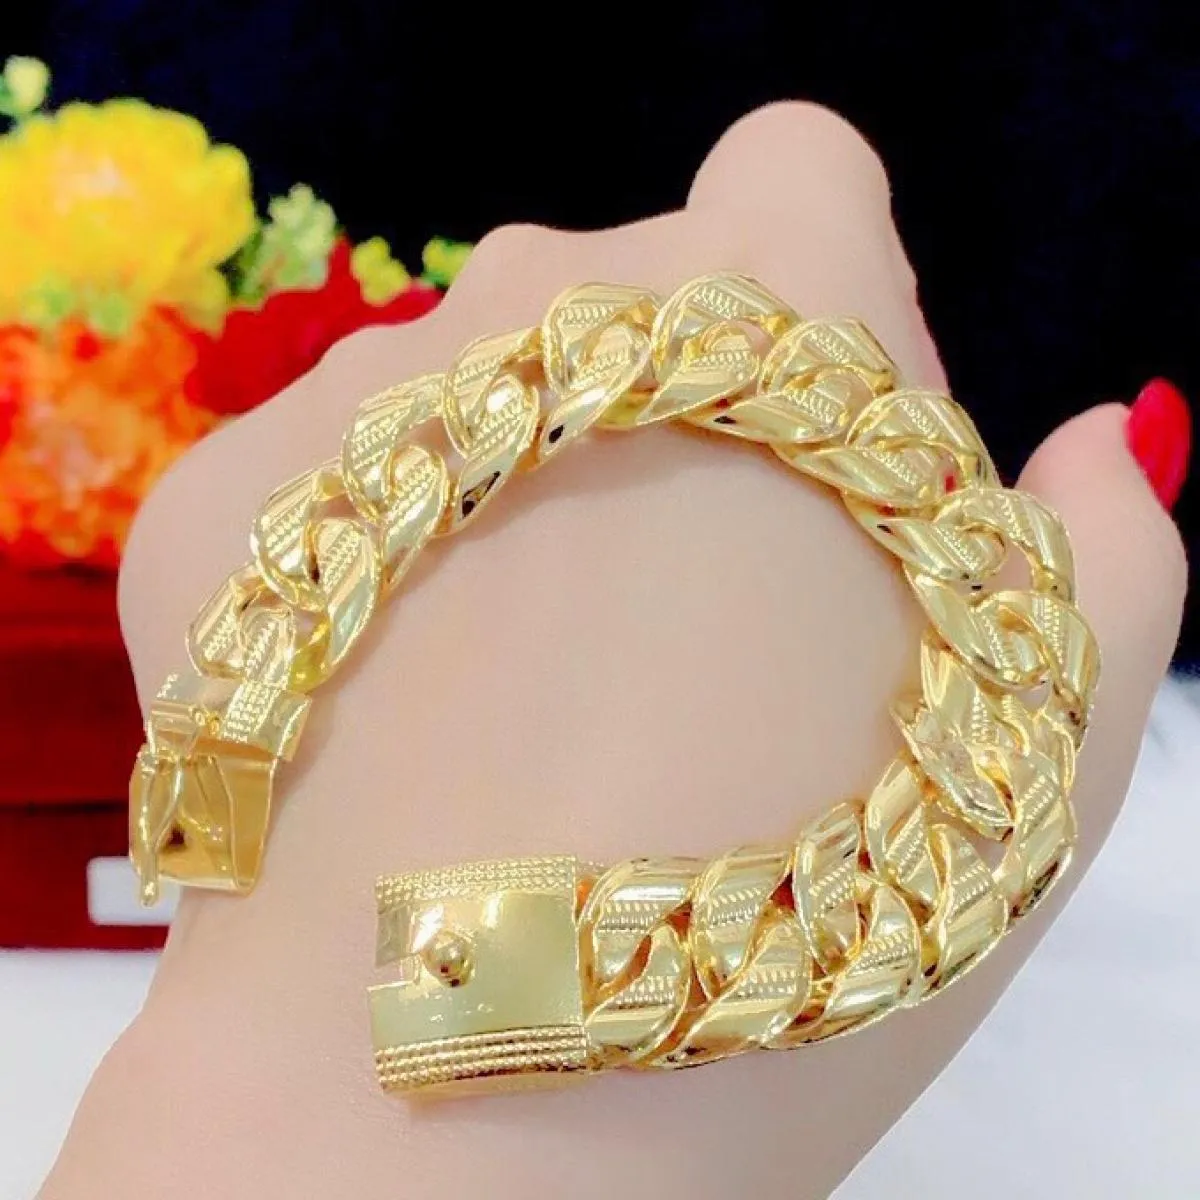 Lắc tay nữ giống vàng thật 100% là món phụ kiện được đánh giá cao bởi người yêu thích sự đẳng cấp và chất lượng. Với chất liệu vàng 18K cao cấp và thiết kế độc đáo, chiếc lắc tay này mang đến sự tự tin và nổi bật cho người đeo.